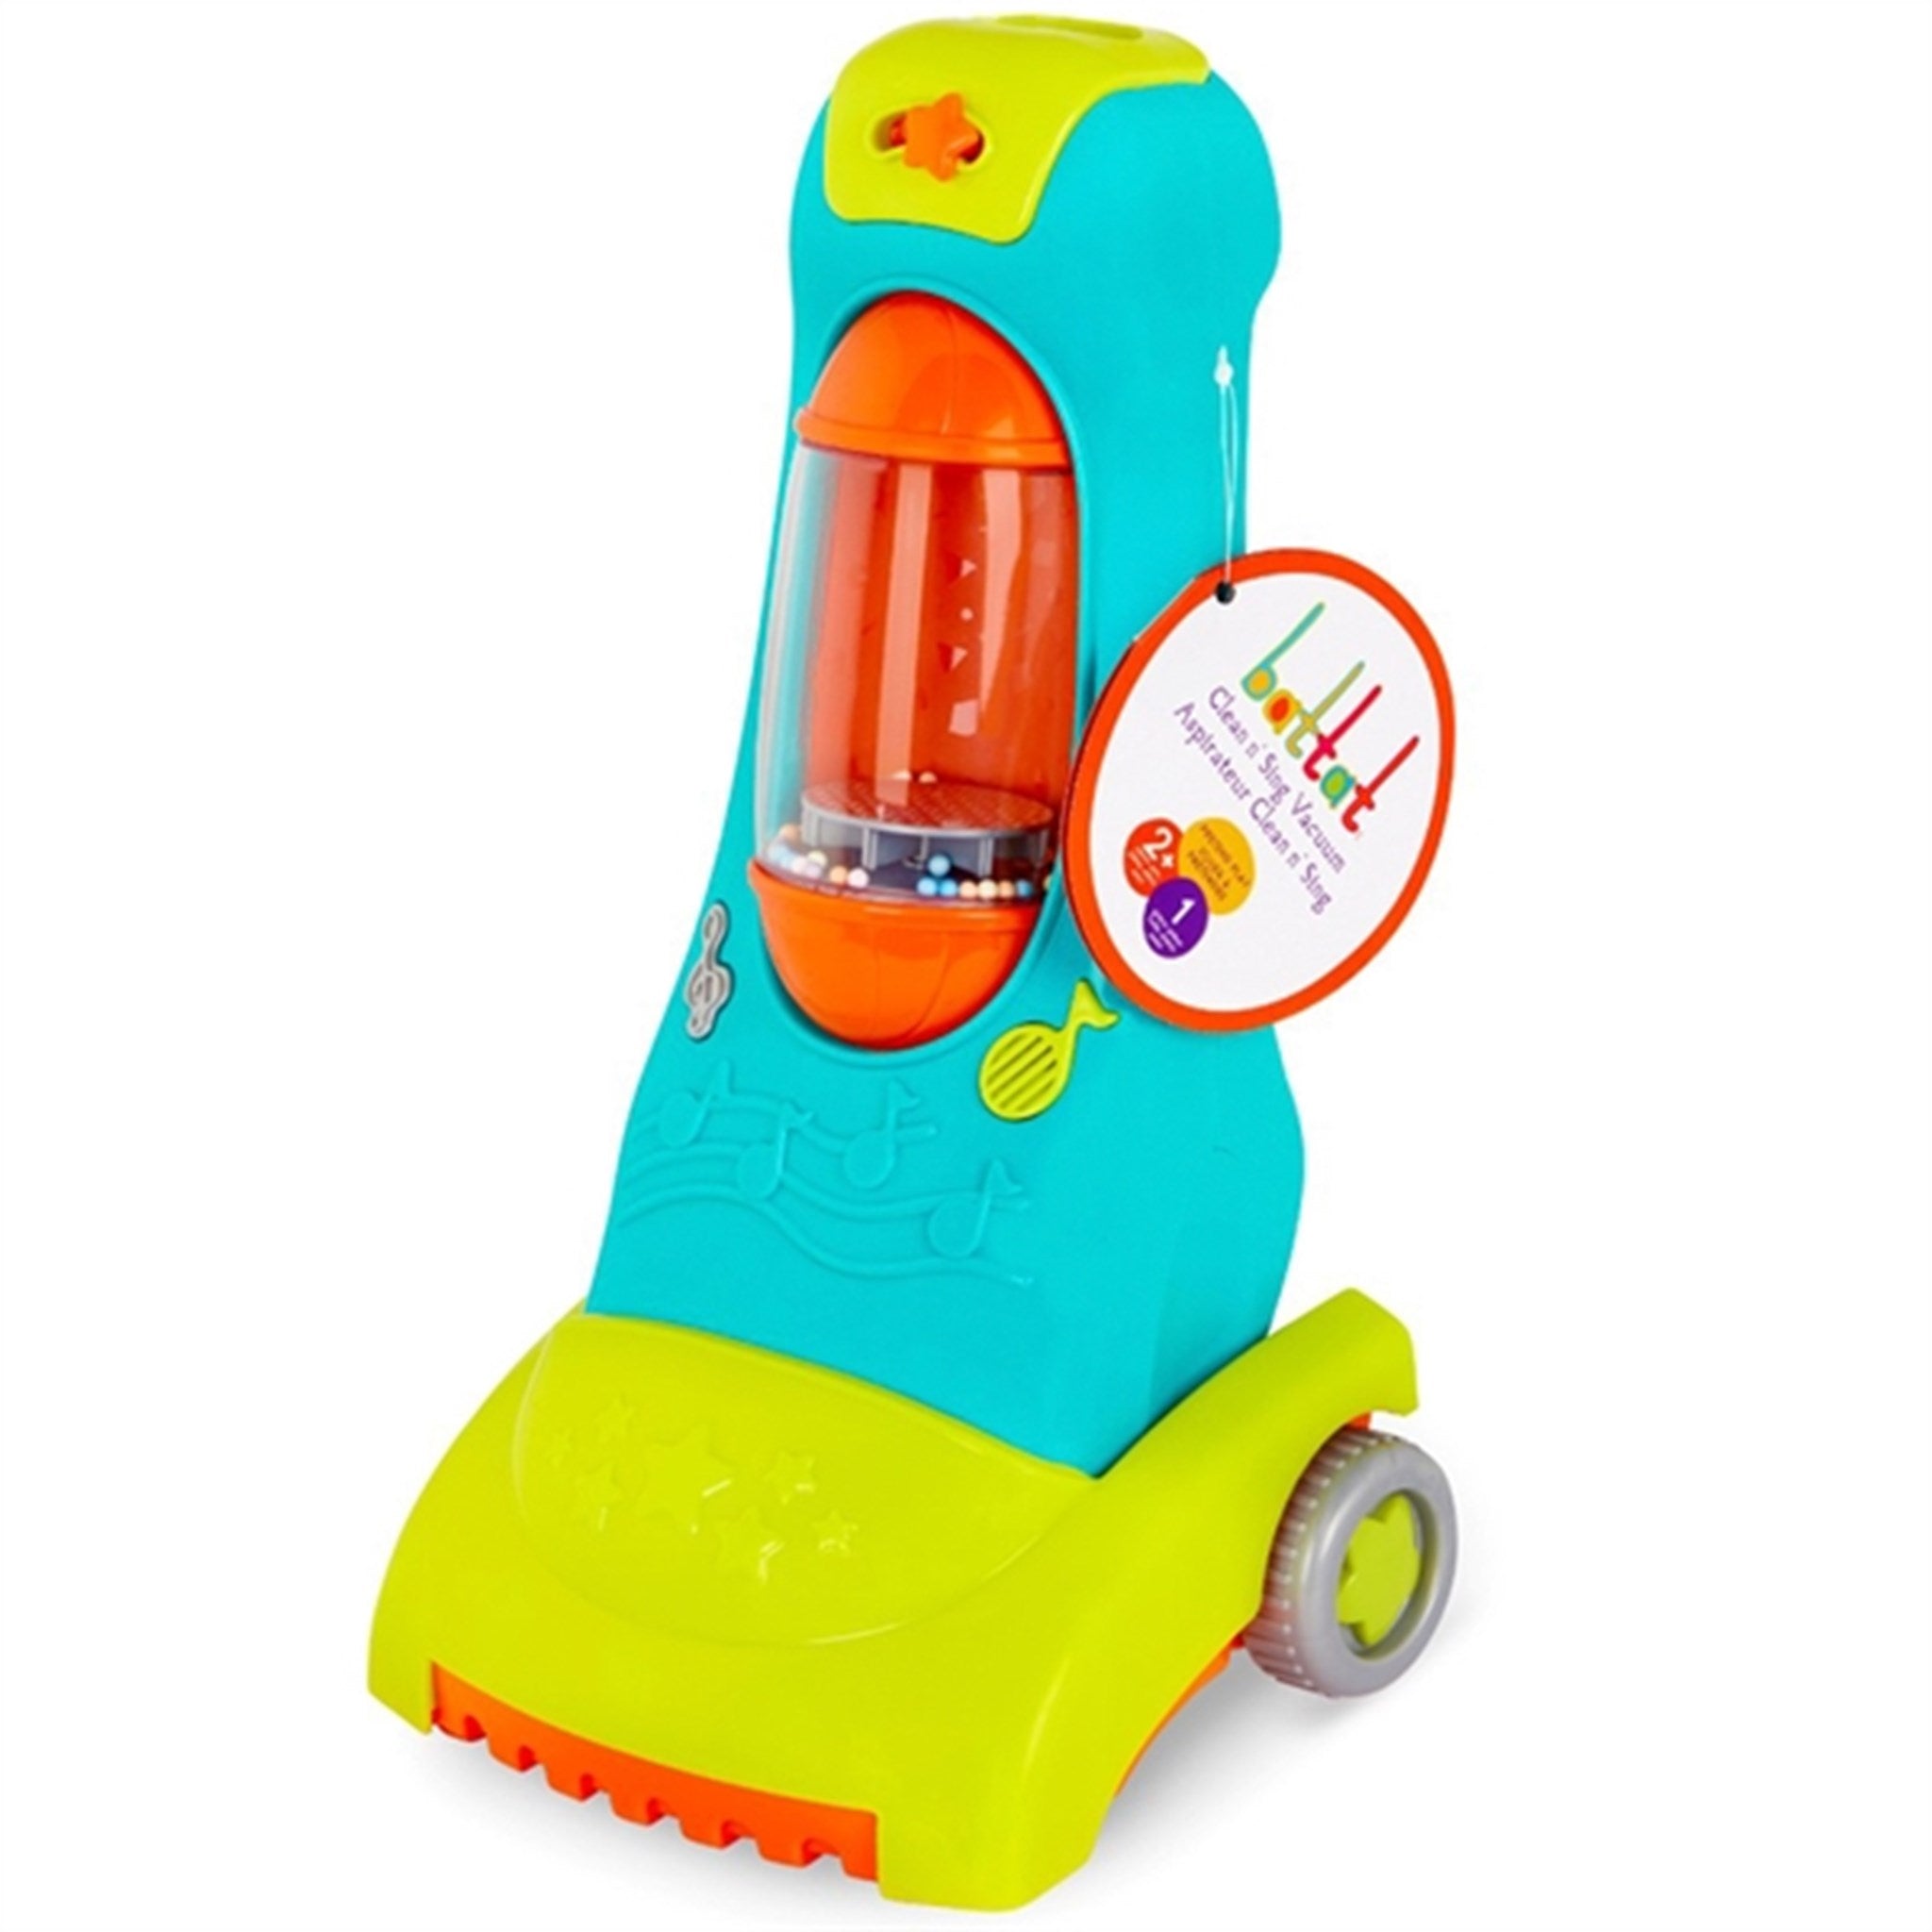 B-toys Battat Vacuum Cleaner